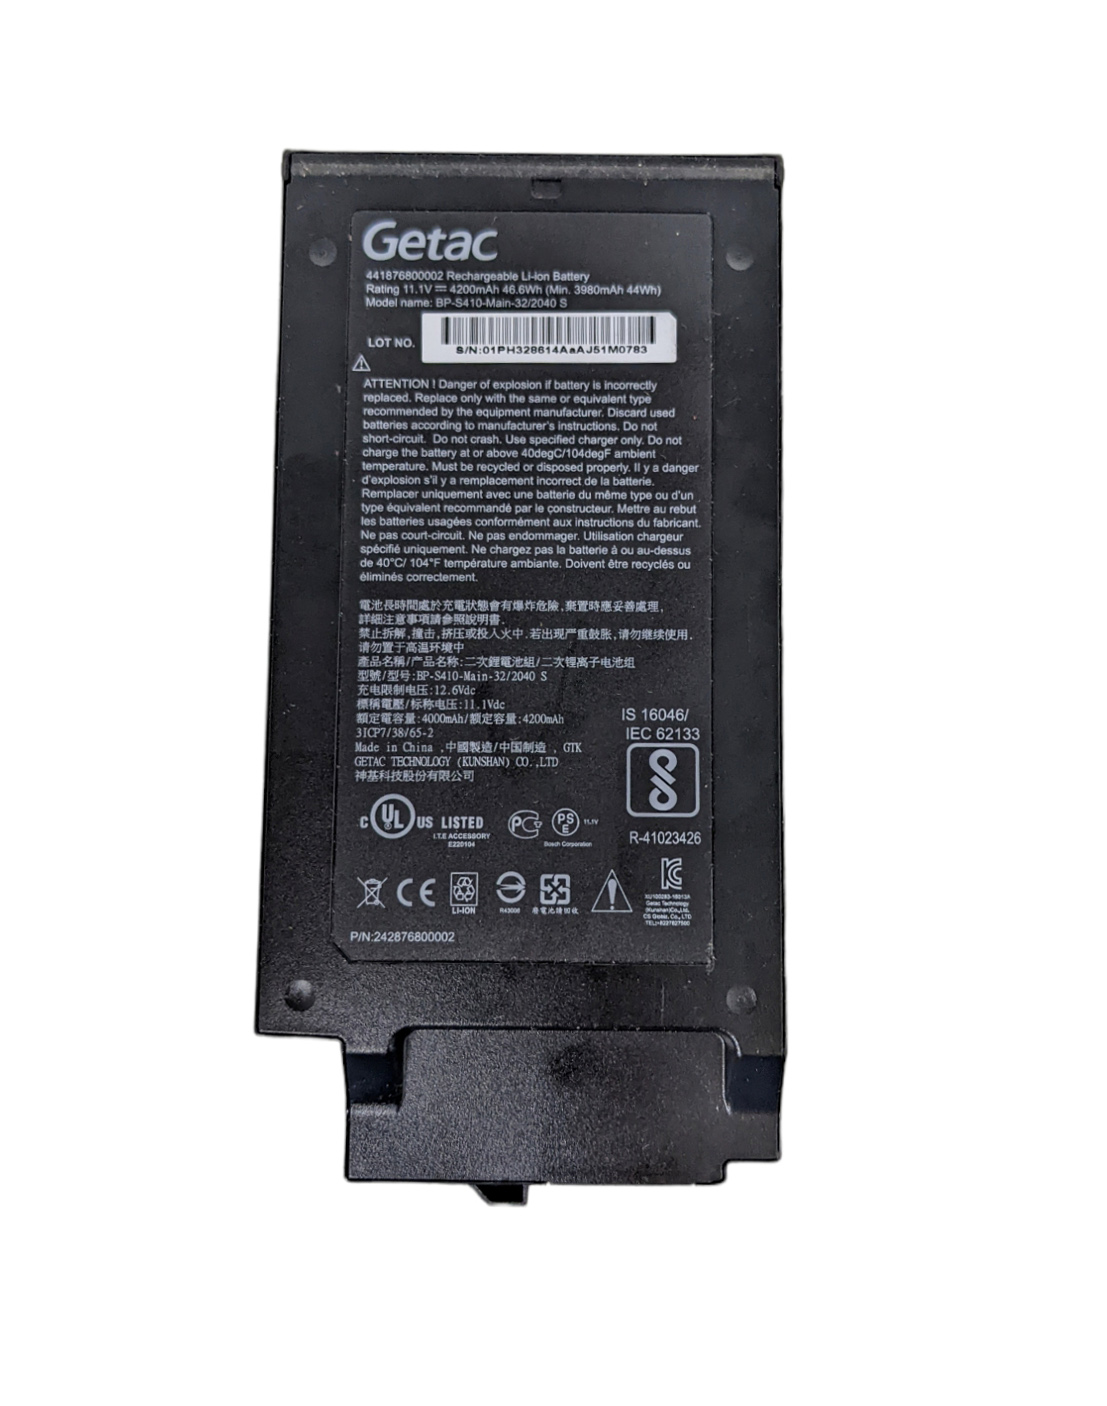 Battery Getac 242876800002 4200mAh 46.6Wh